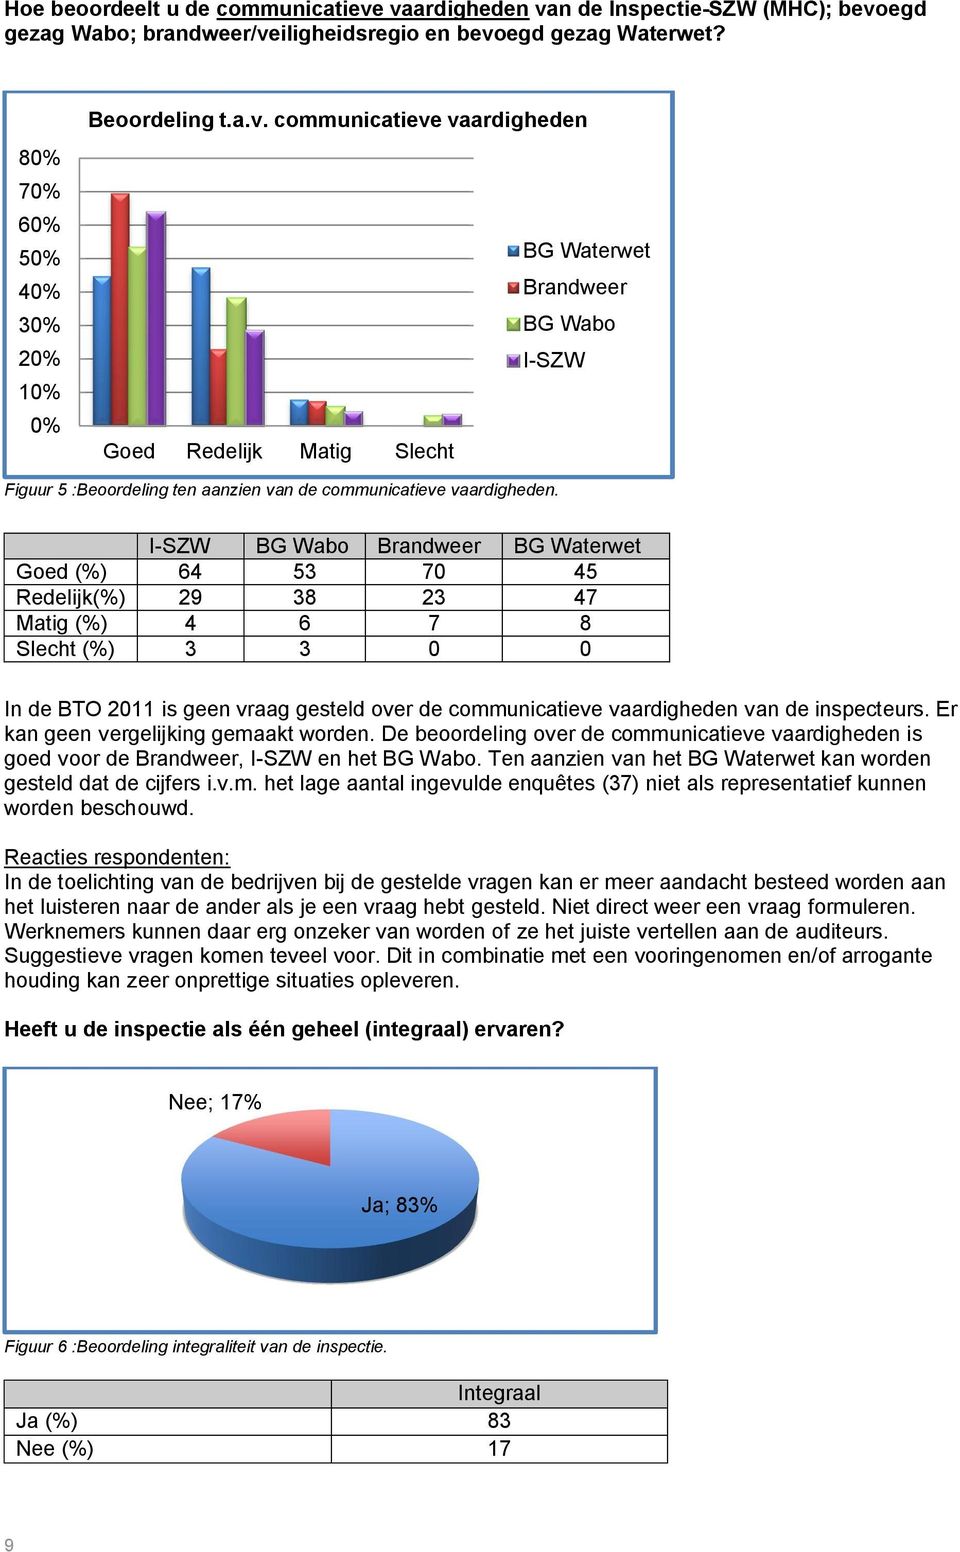 I-SZW BG Wabo Brandweer BG Waterwet Goed (%) 64 53 70 45 Redelijk(%) 29 38 23 47 Matig (%) 4 6 7 8 Slecht (%) 3 3 0 0 In de BTO 2011 is geen vraag gesteld over de communicatieve vaardigheden van de